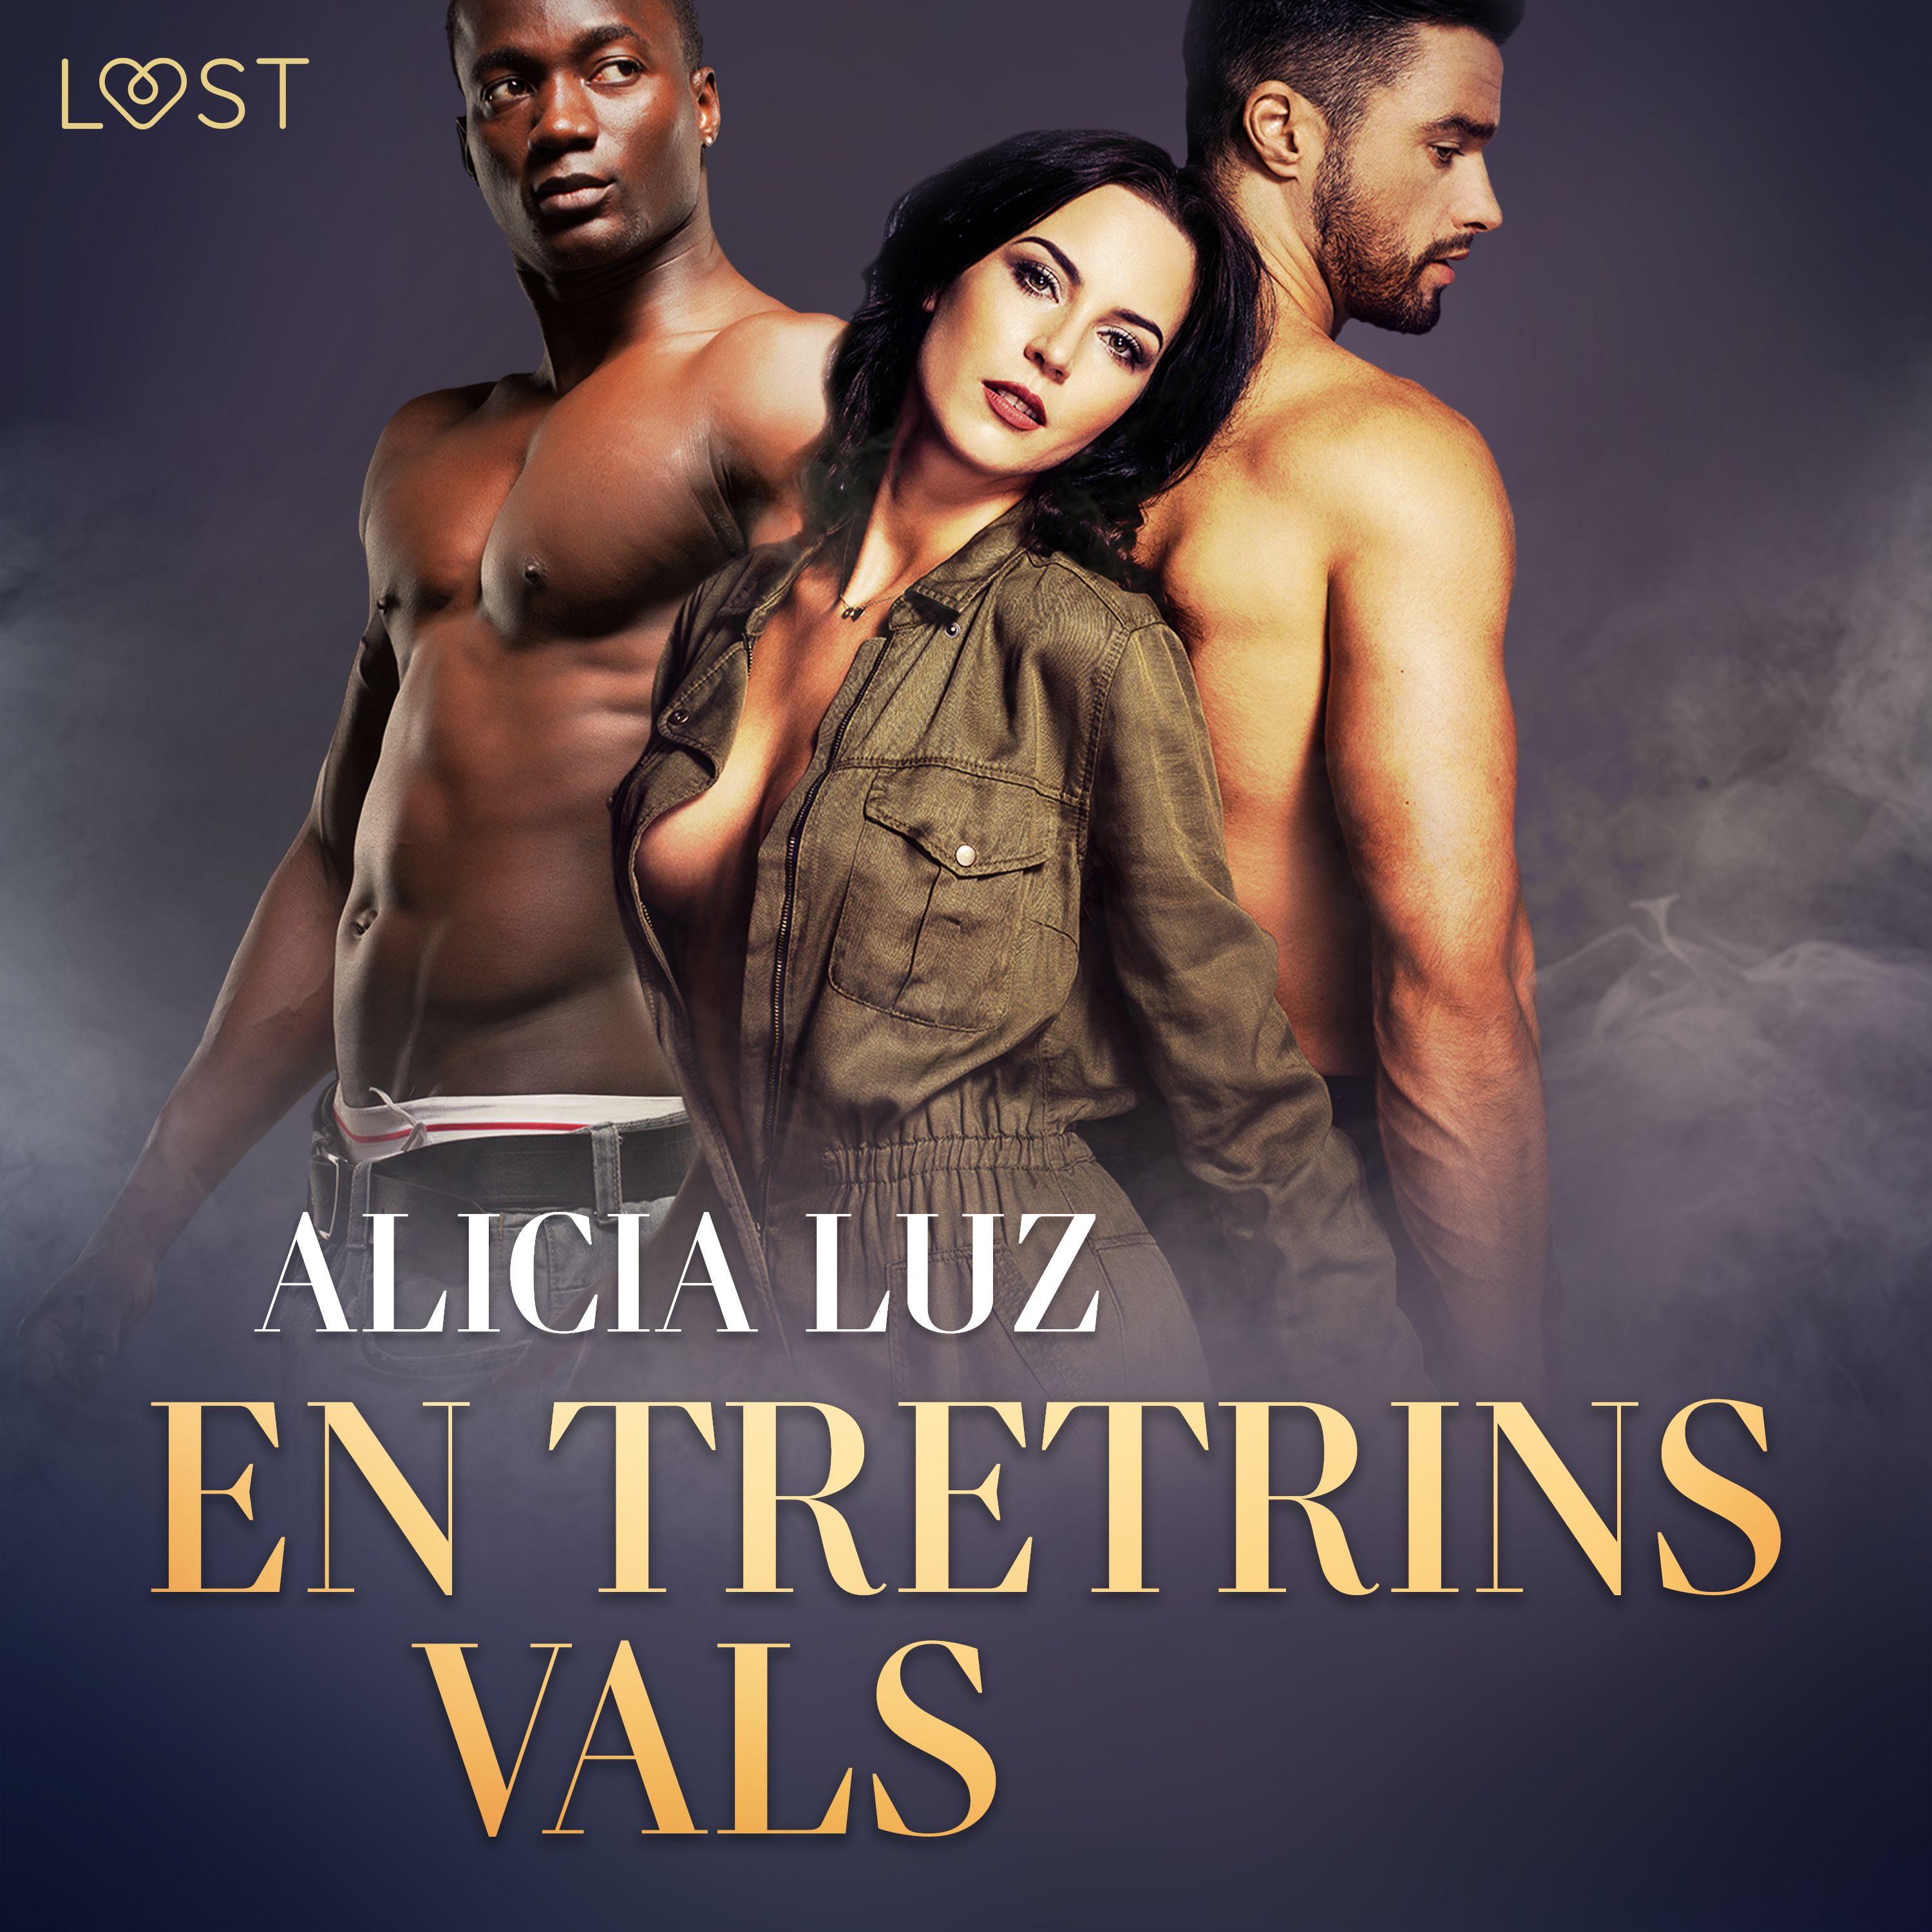 En Tretrins Vals - erotisk novelle, ljudbok av Alicia Luz